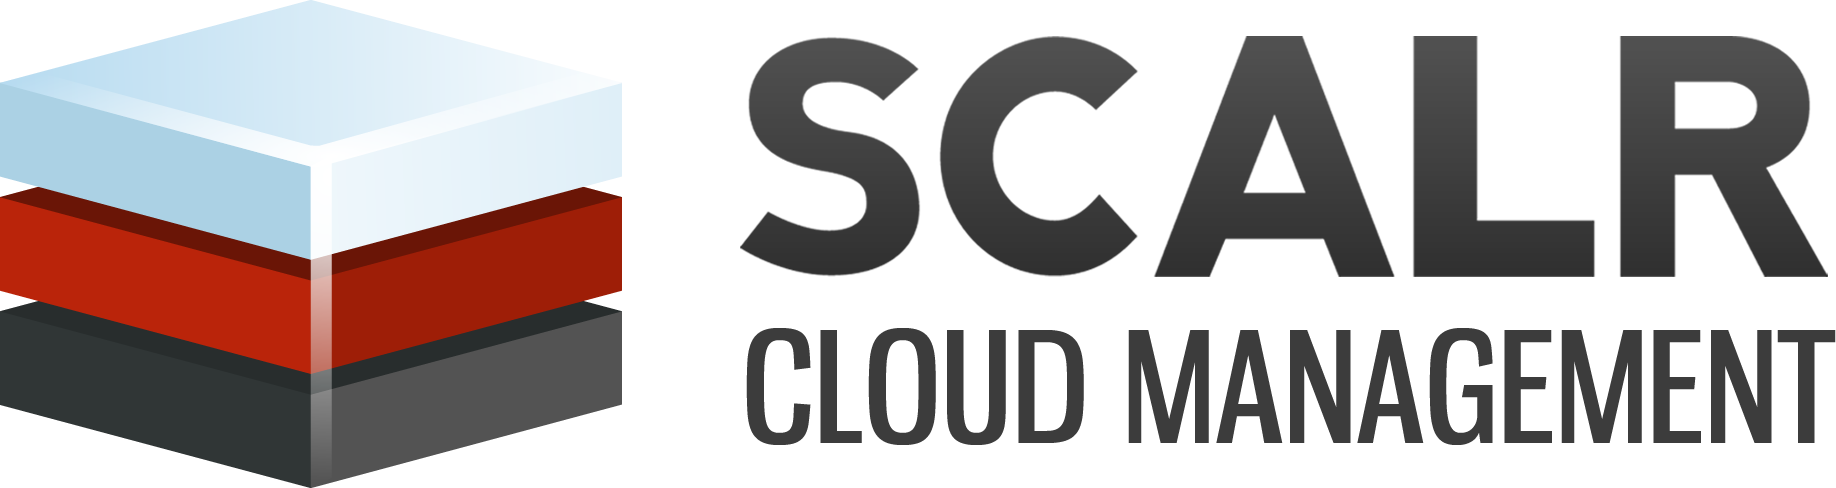 Scalr_logo